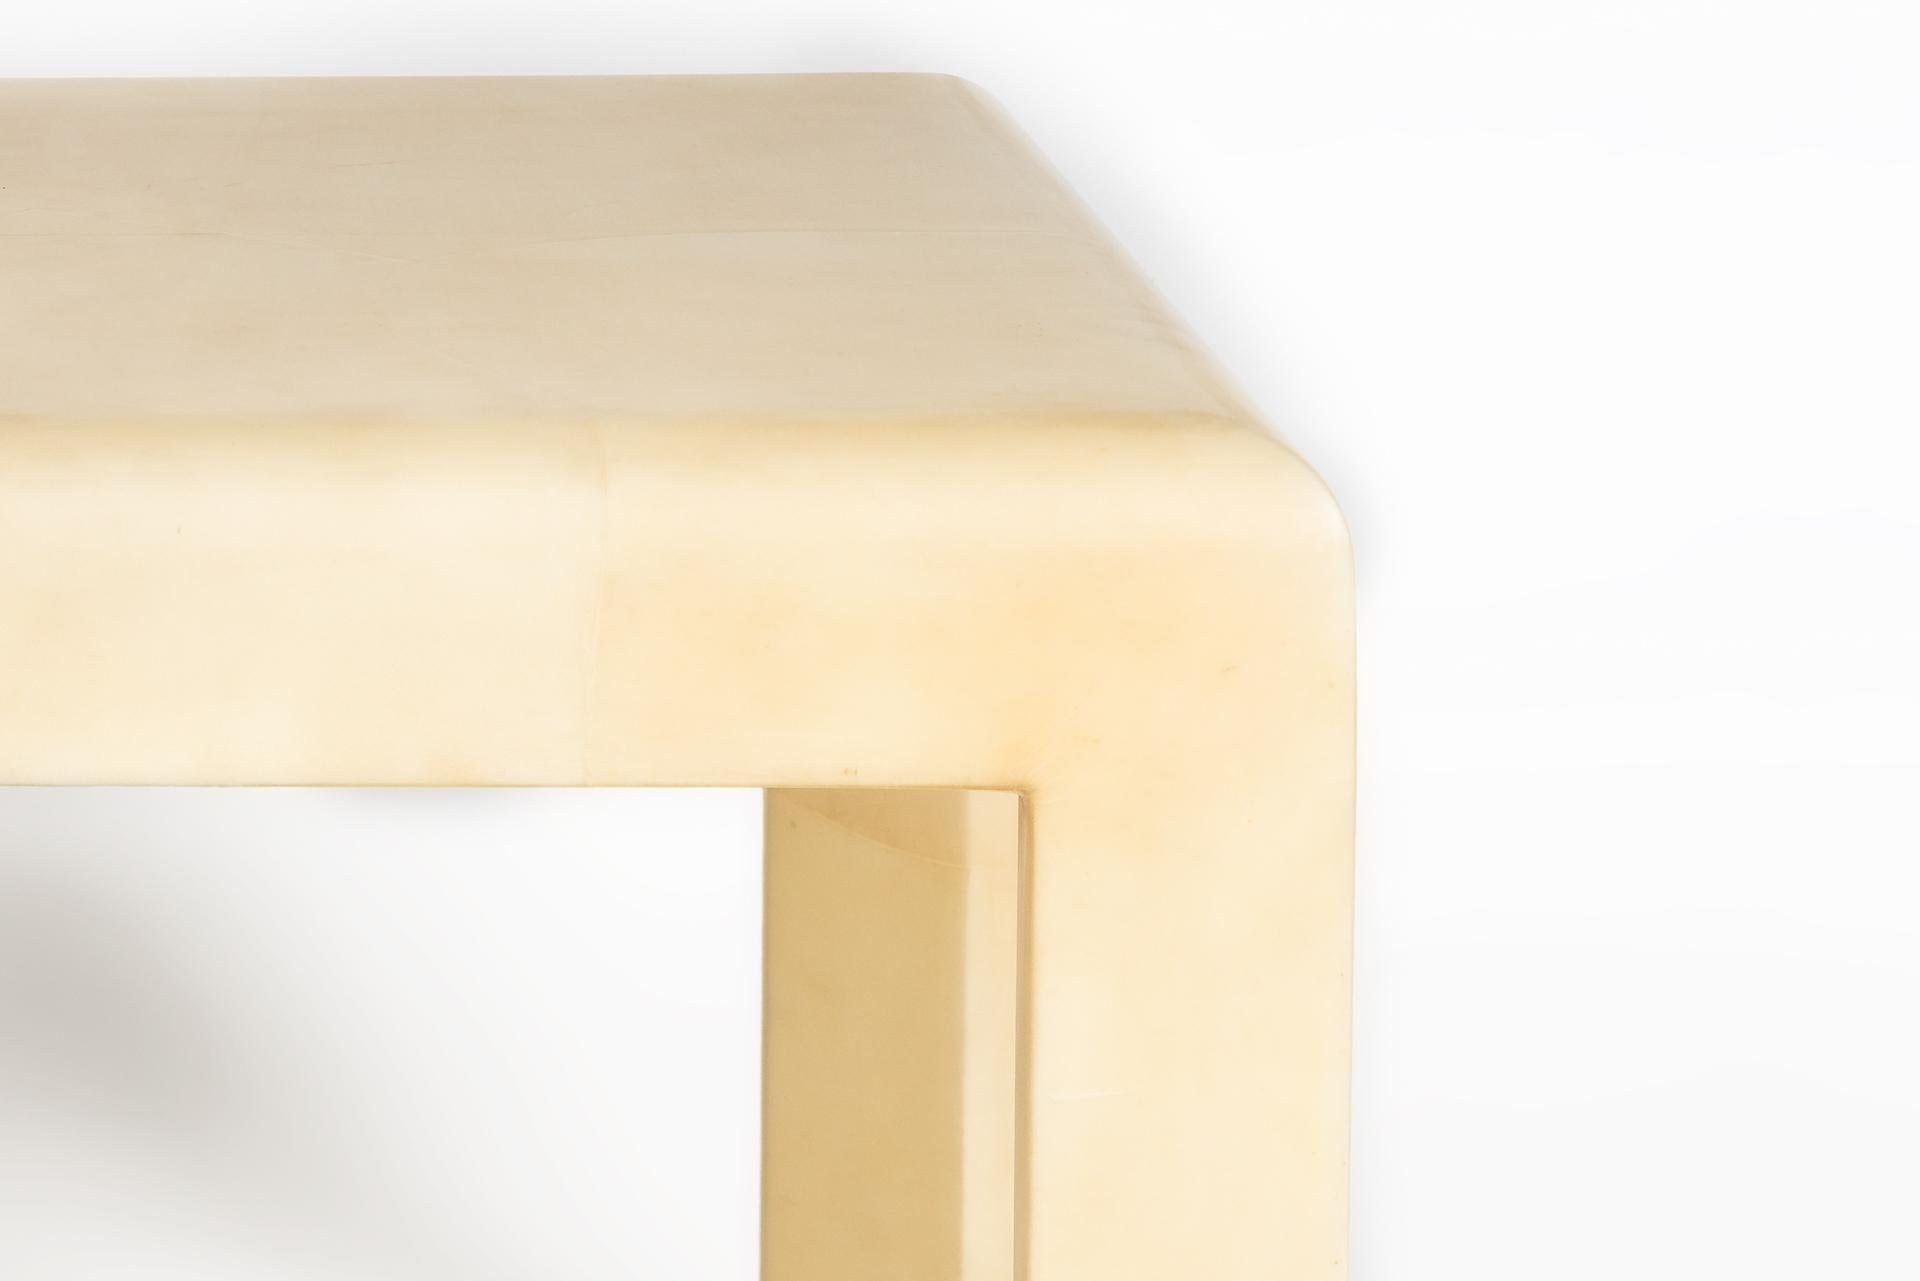 Cette table d'appoint moderne, dans le style de Karl Springer, a un look contemporain et unique grâce à sa matière en peau de chèvre blanc crème. Les angles sont arrondis et le plateau ainsi que les pieds sont fabriqués en peau de chèvre.
 